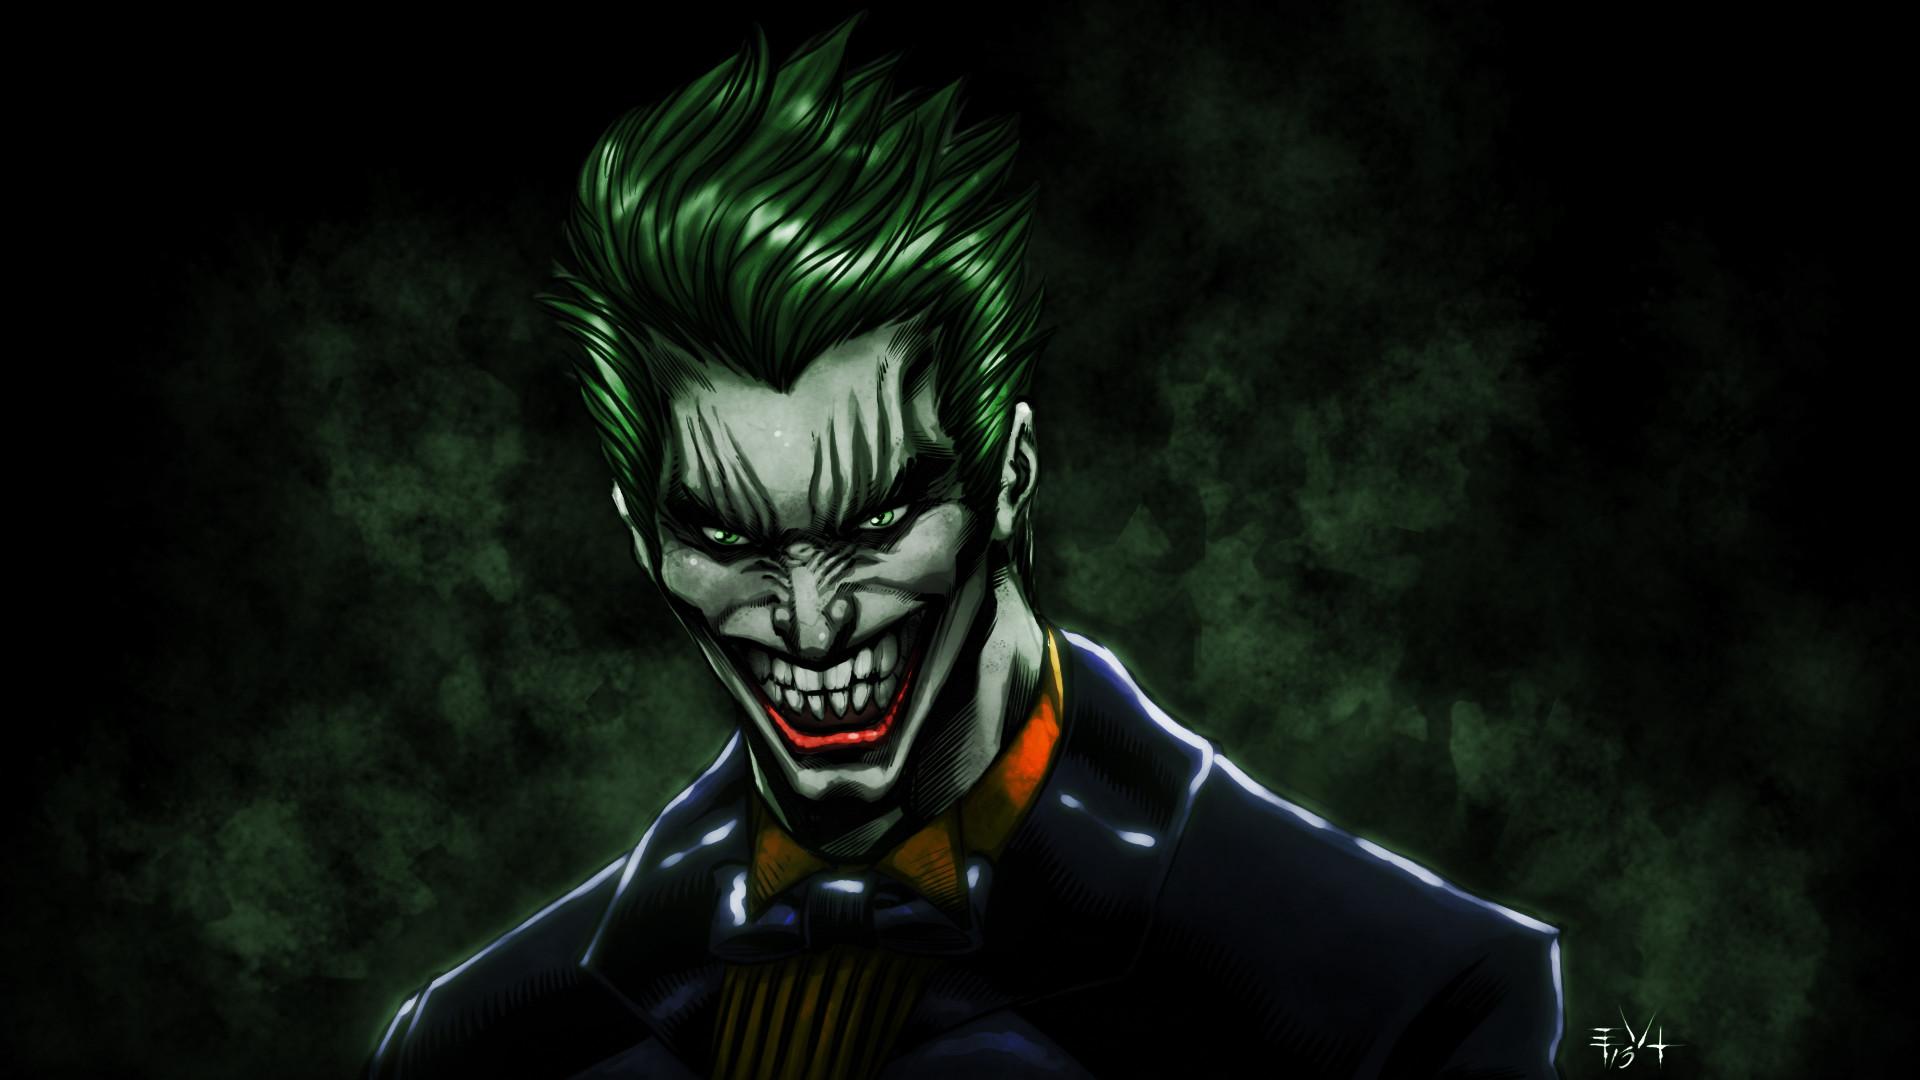 Scary Joker Wallpaper